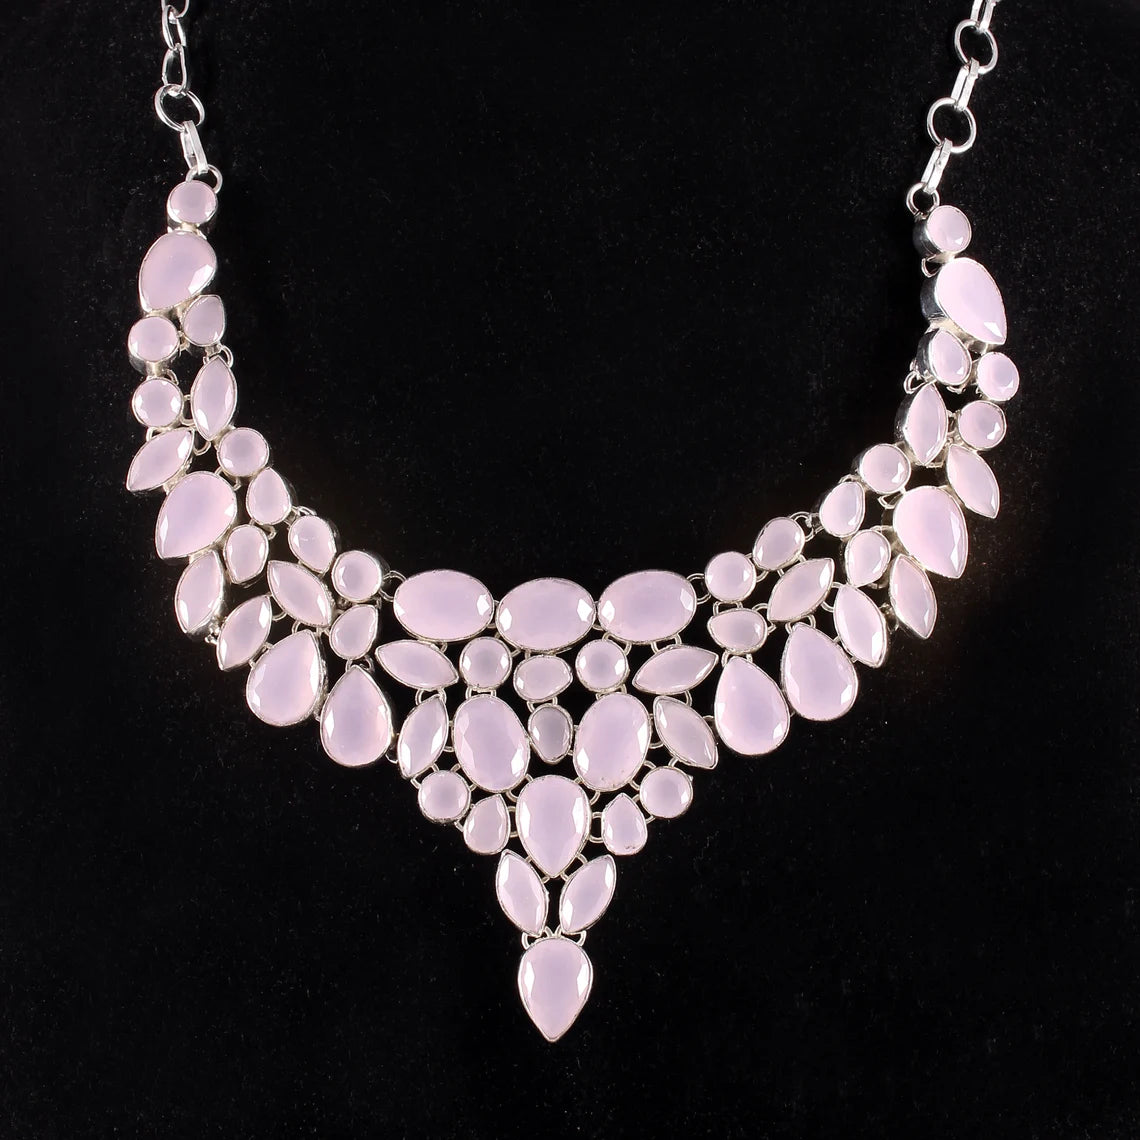 Natural Rose Quartz Bib Necklace For Wedding - 925 Sterling Silver Necklace